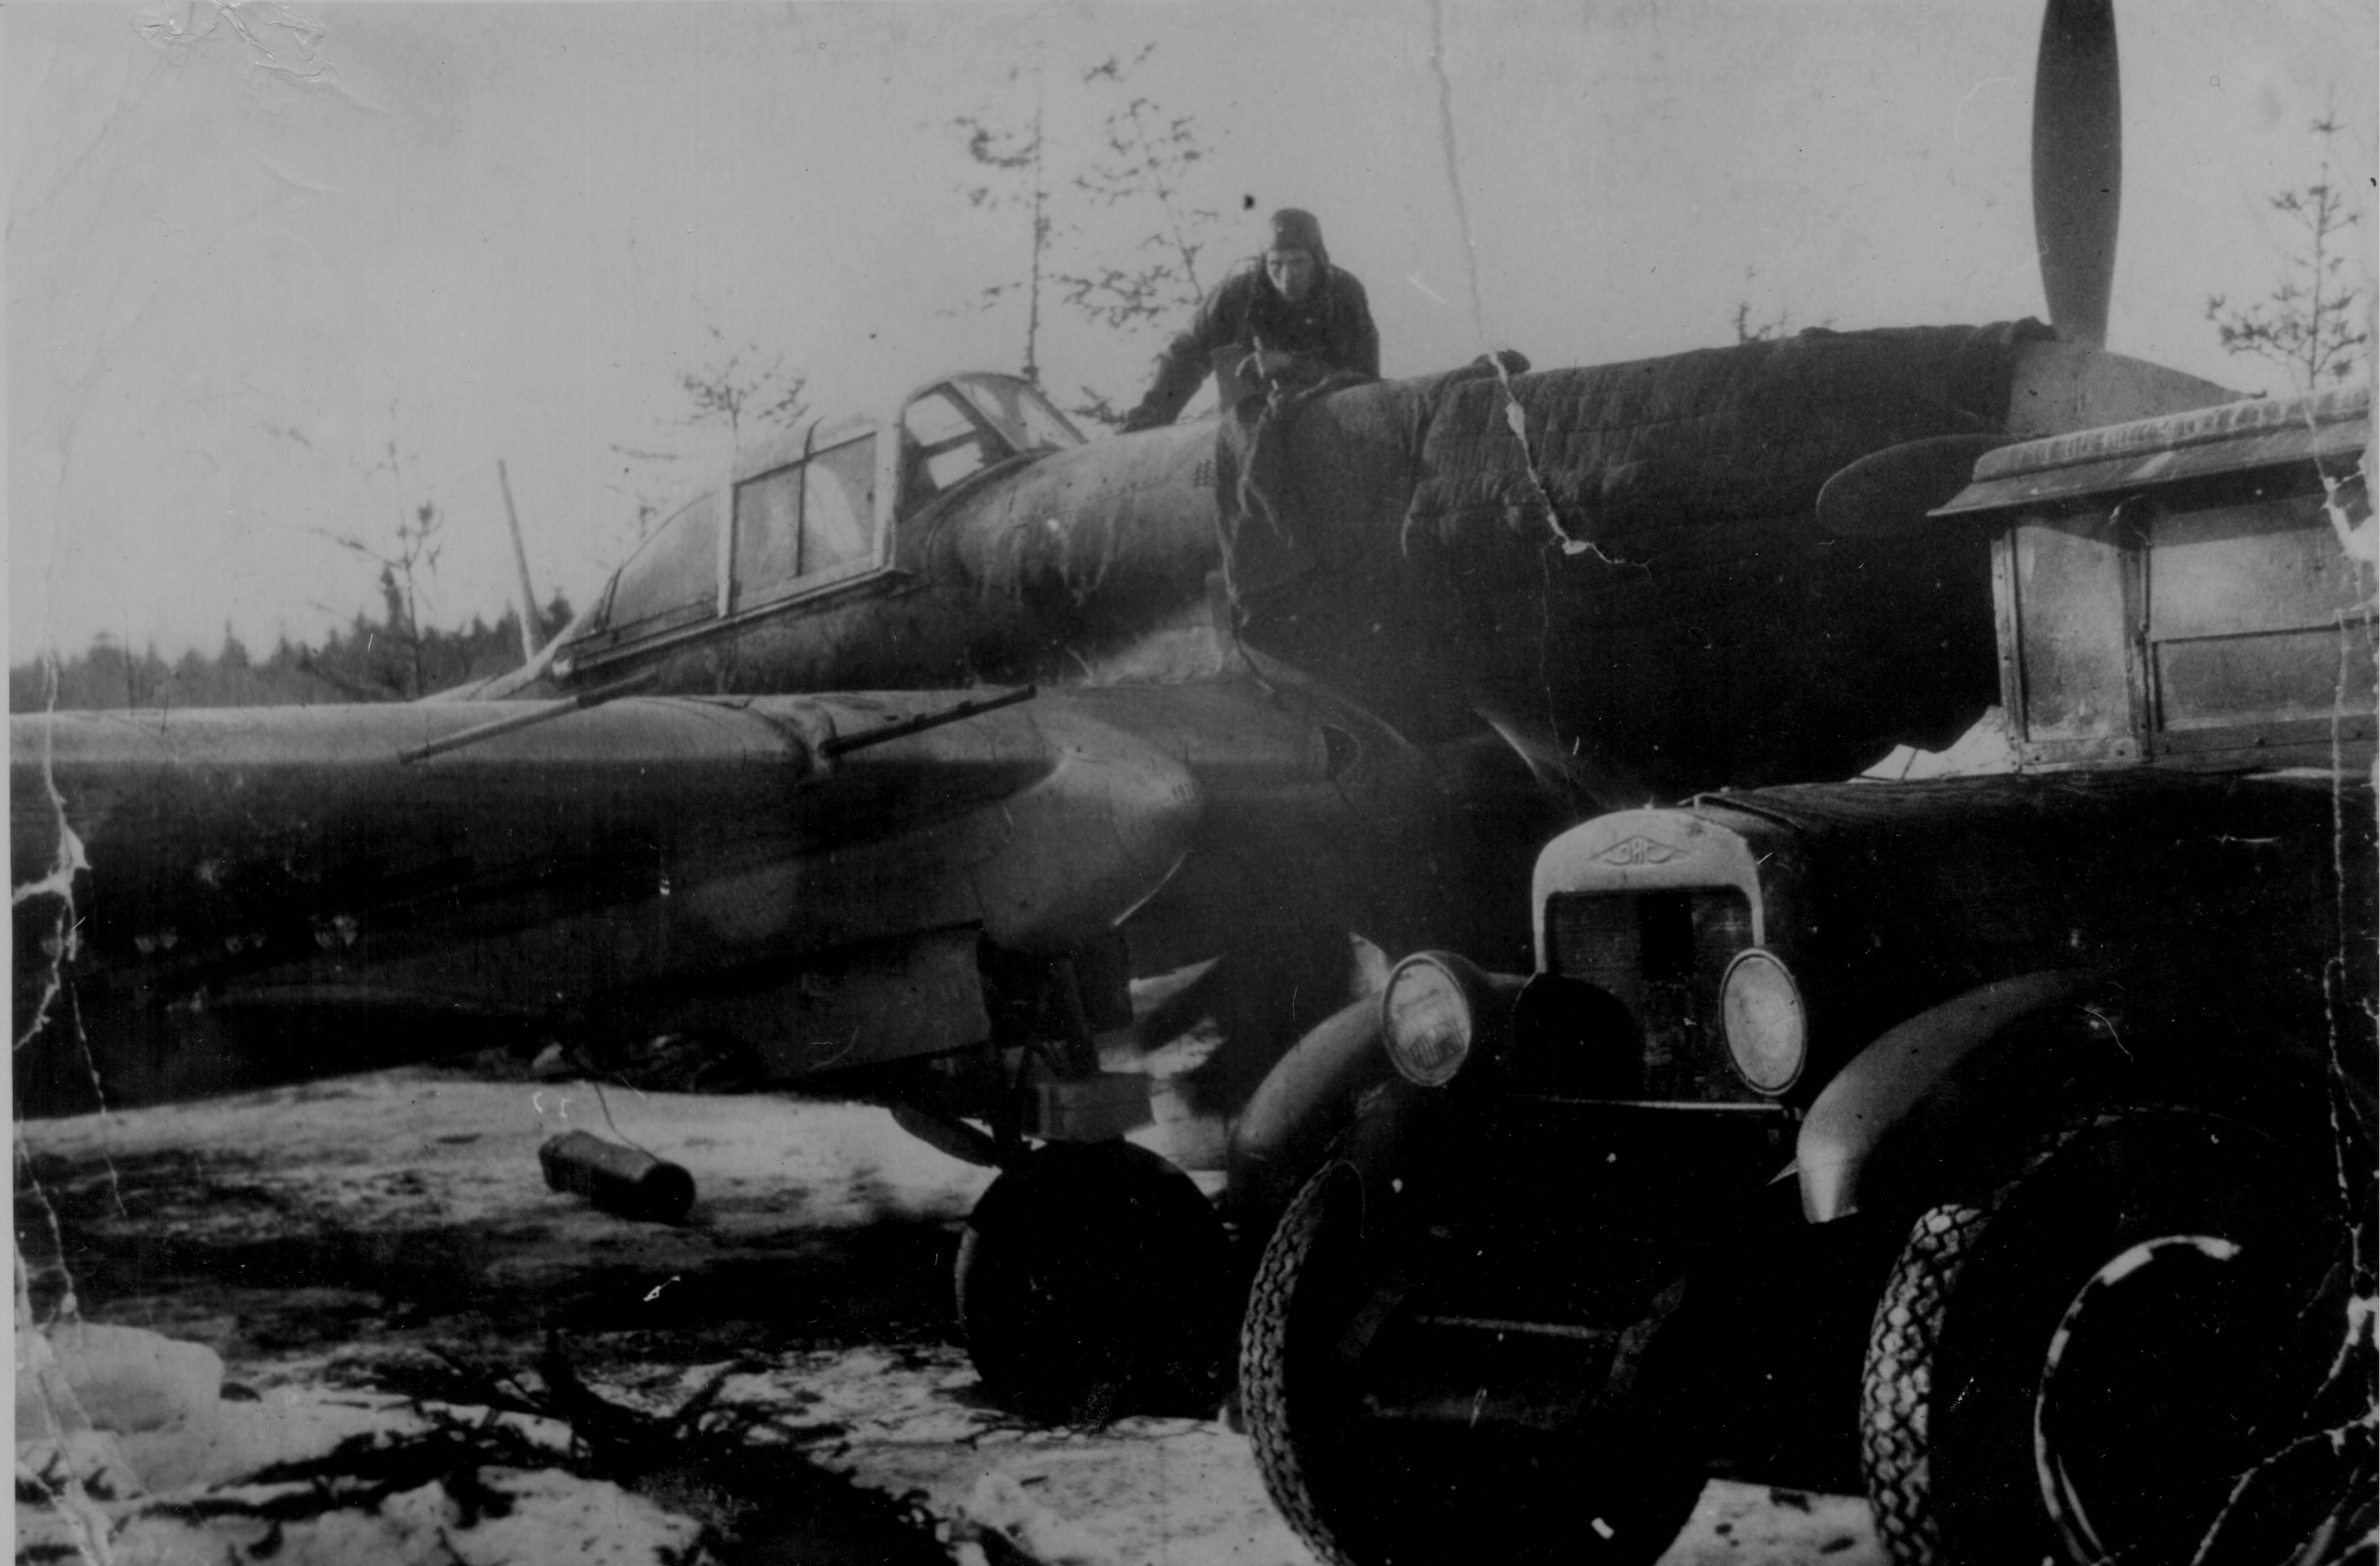 An early Ilyushin Il-2, 1942